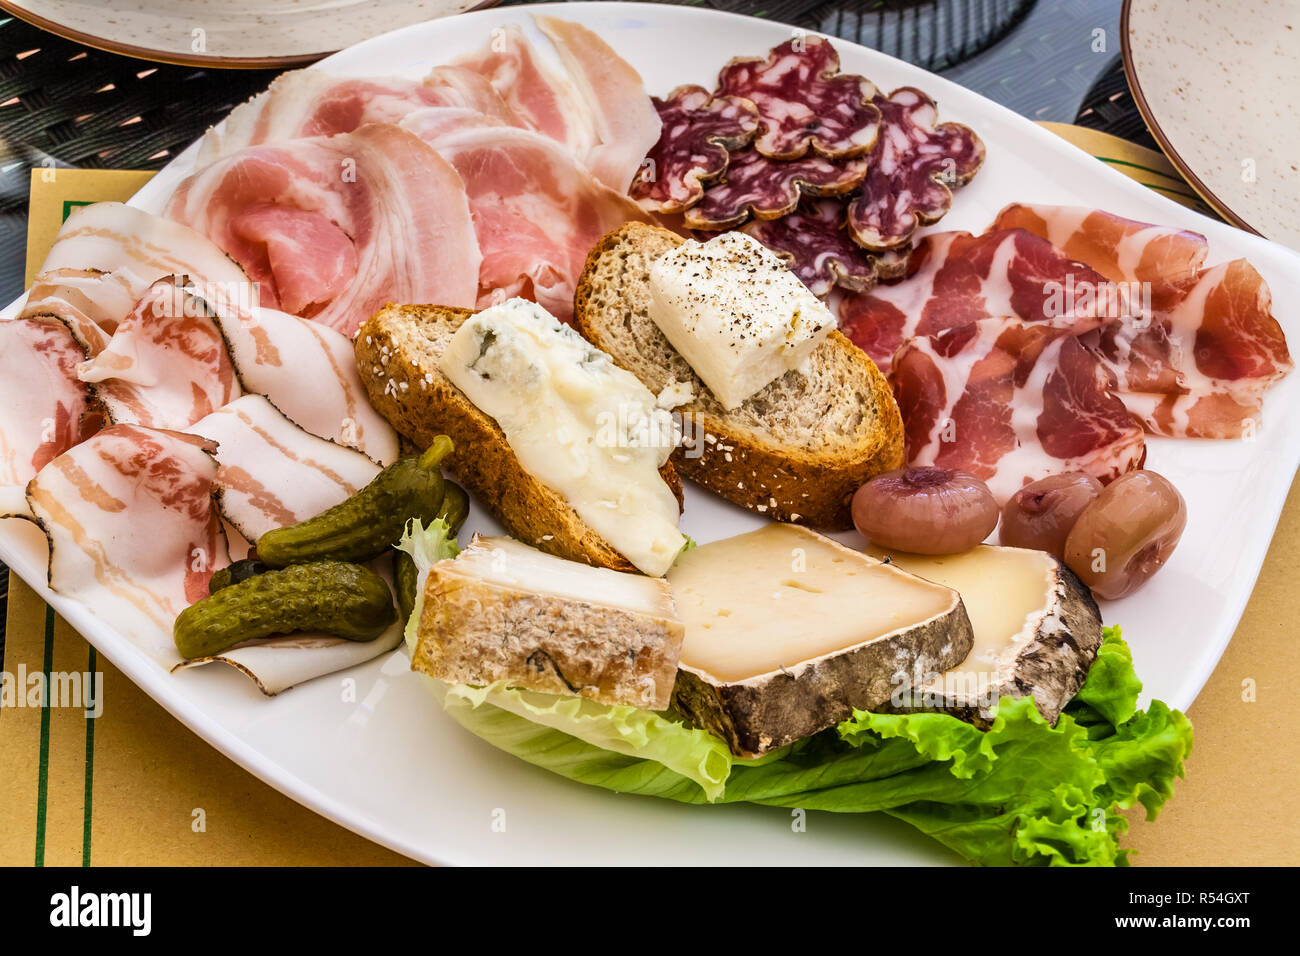 Auswahl an Aufschnitt und Käse mit Brot, Zwiebeln und Gurken, auf einem weißen Teller. Stockfoto